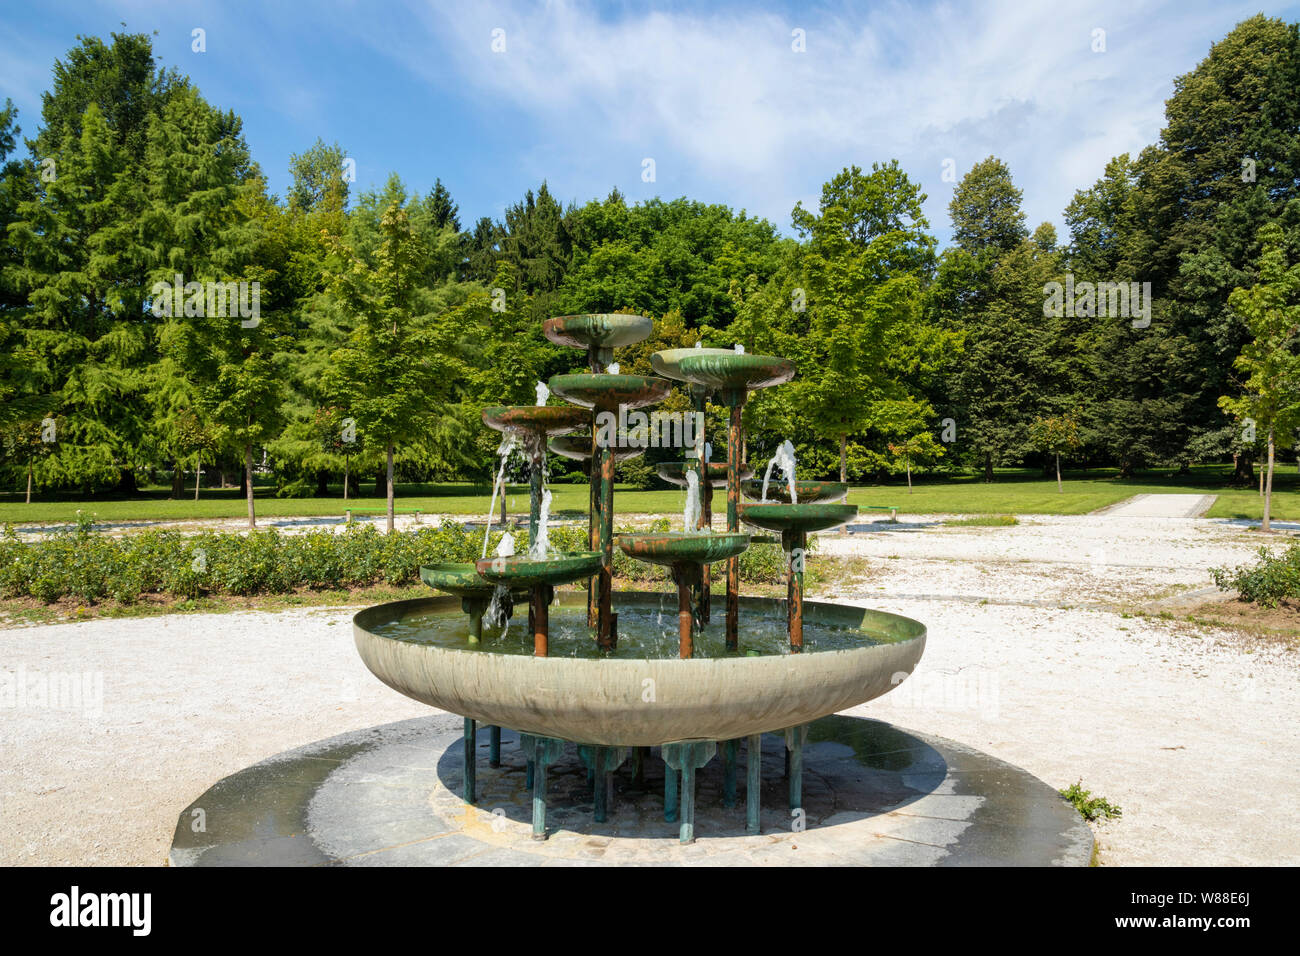 El parque Tivoli fuente de bronce es un recipiente grande con 13 pequeños recipientes a diferentes alturas en una espiral parque Tivoli Ljubljana Eslovenia ue Europa Foto de stock